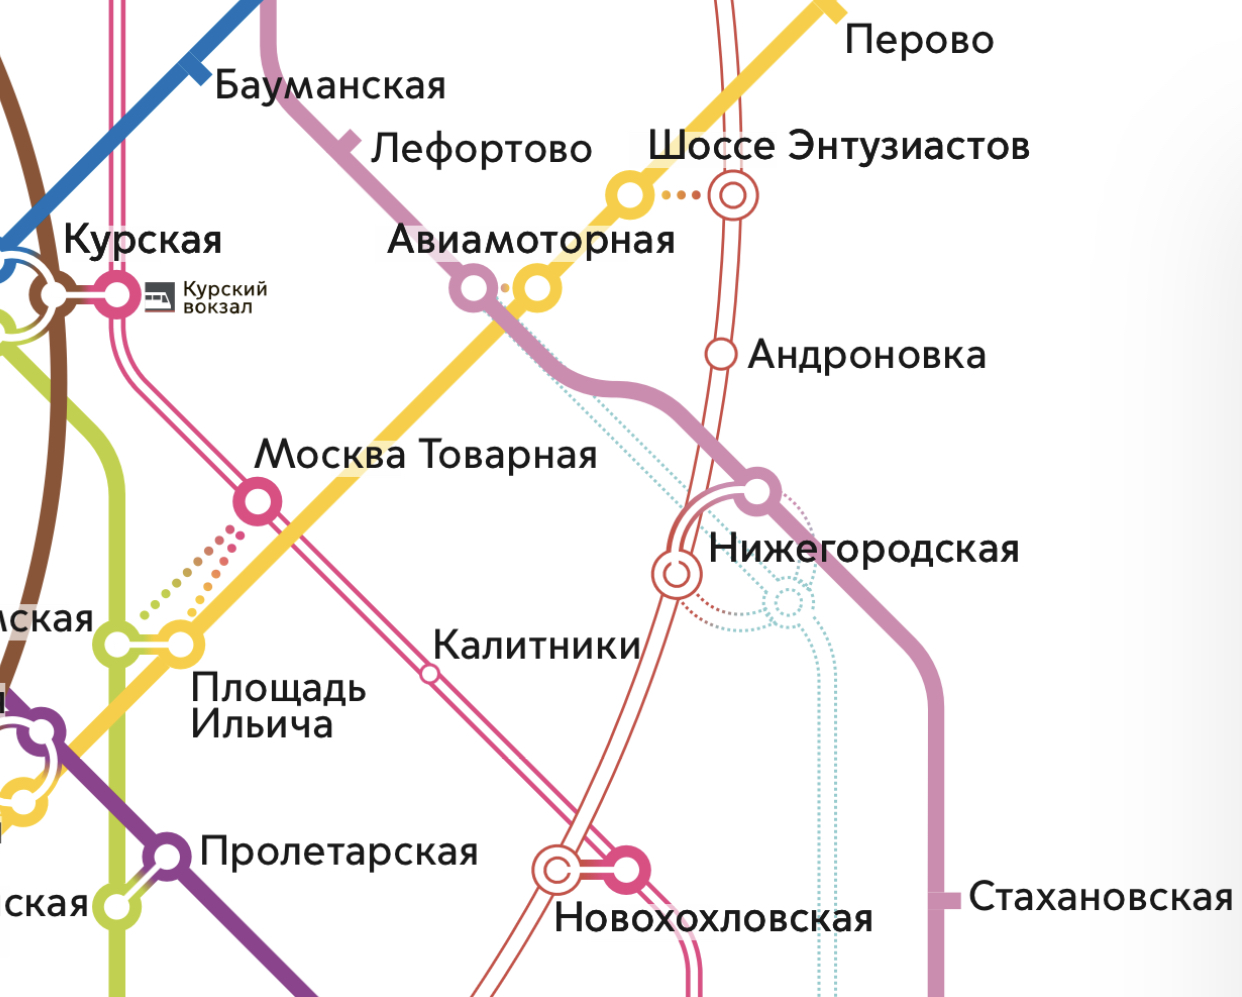 Станция «Нижегородская» официально появилась на схеме Московского метрополитена - фото 1